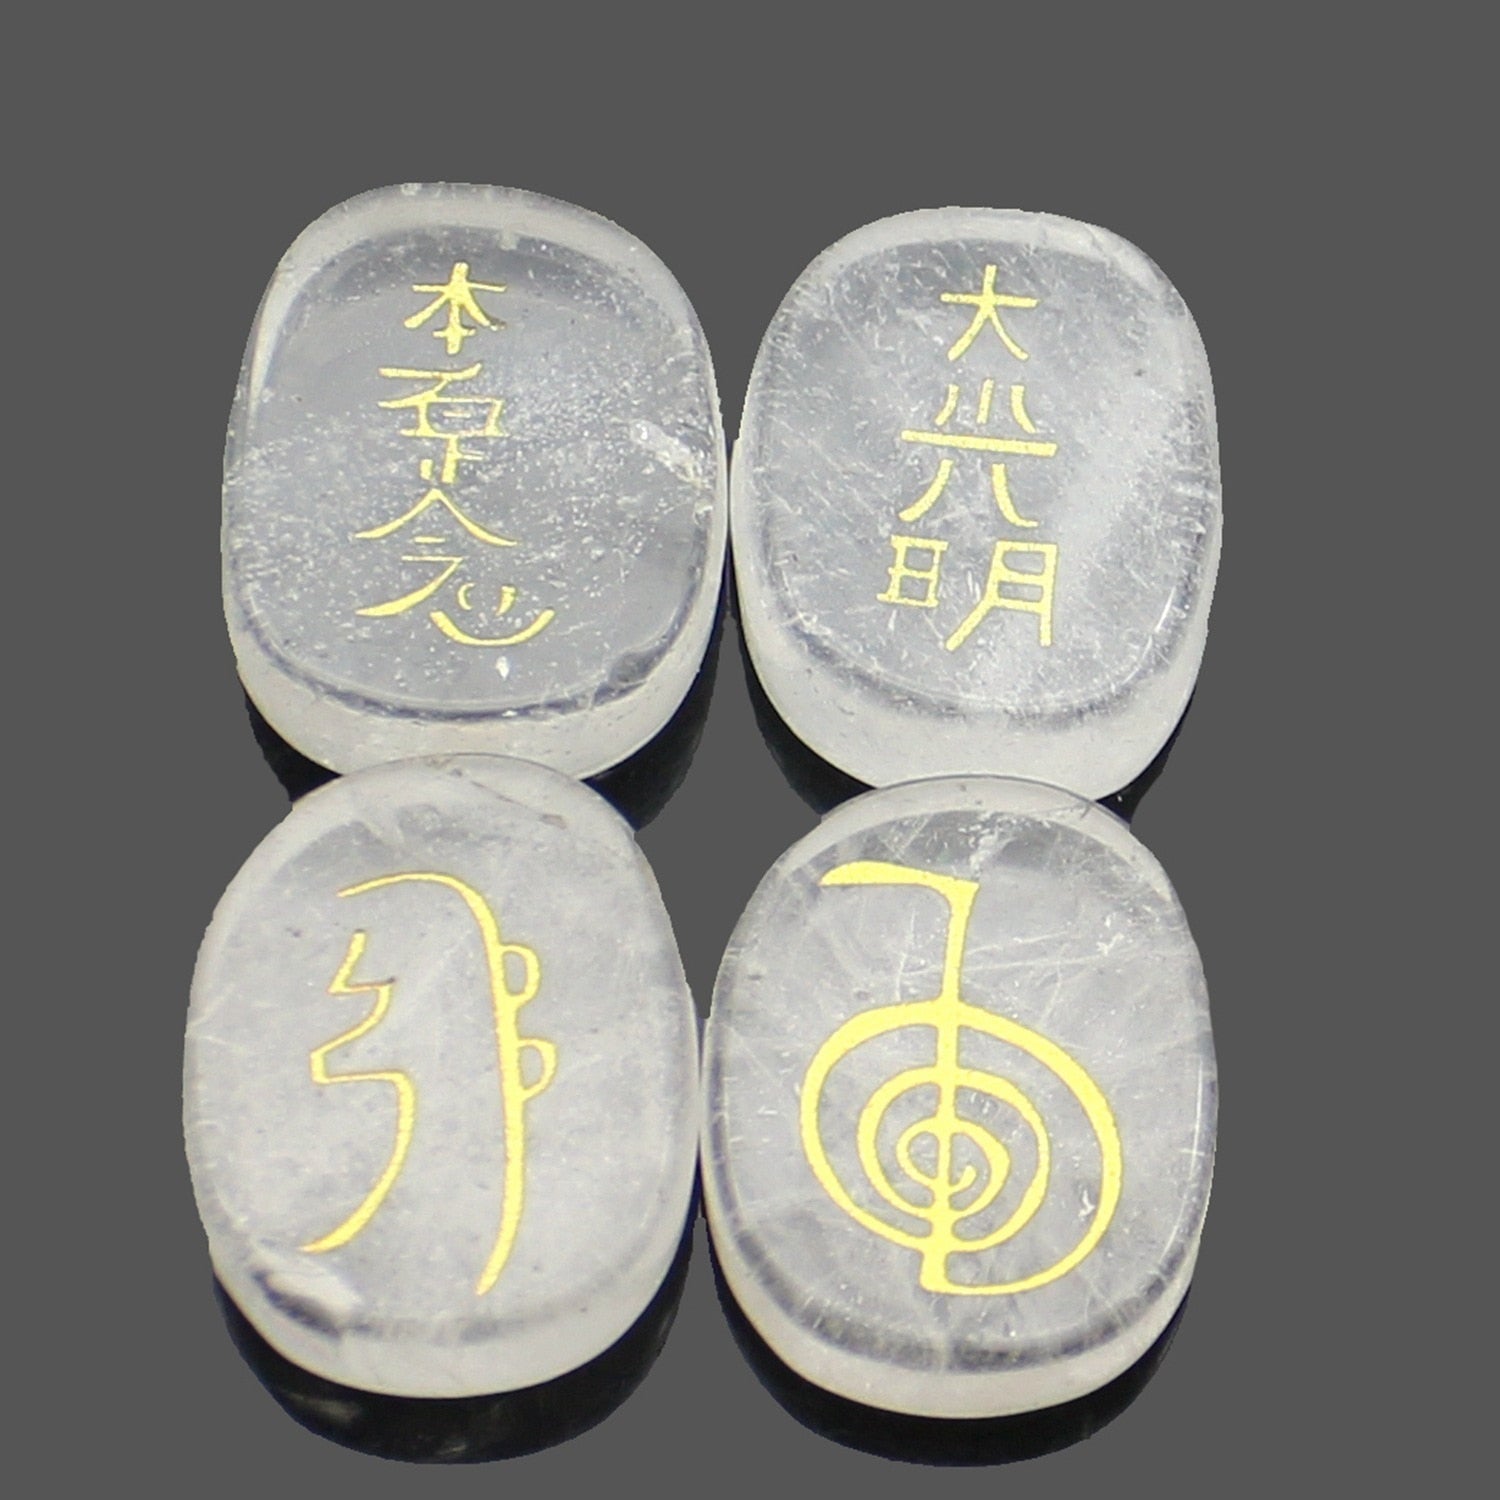 four reiki symbol engraved stones chokurei seihiki honshazeshonen daikomyo  (power, emotion, distance, higher level or master) white crystal